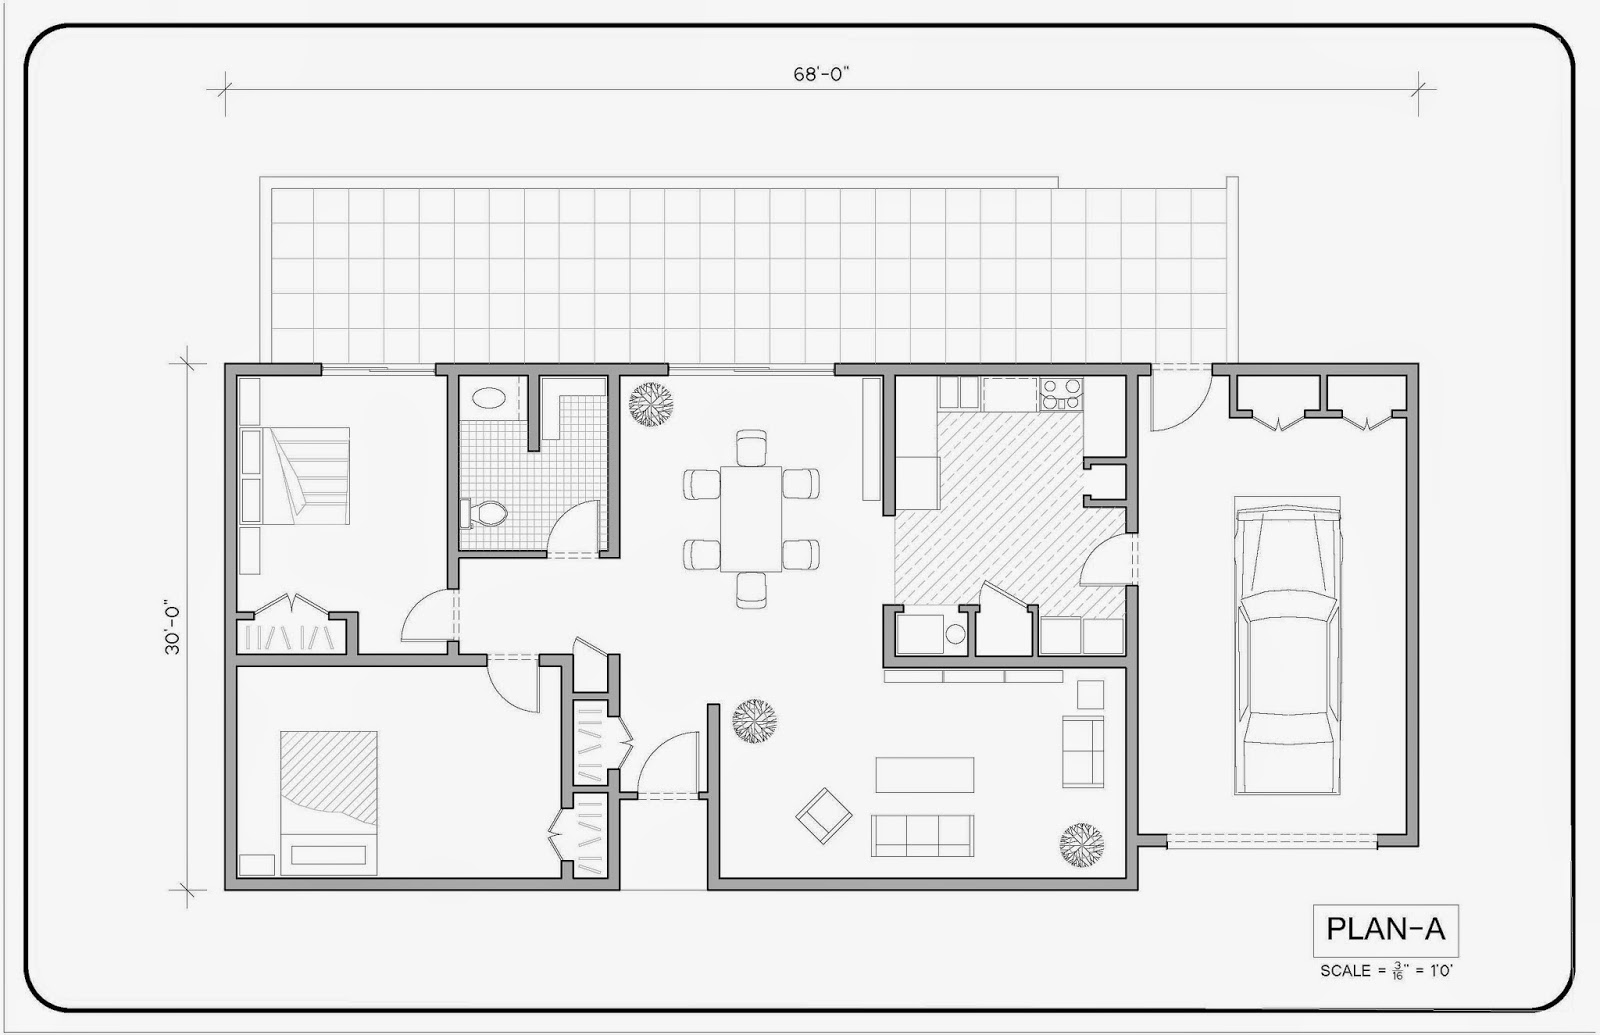 Pour plan. Схема комнаты из автокада. Эскиз план дома 3d. 2d чертежи. Автокад проектирование ванной комнаты.